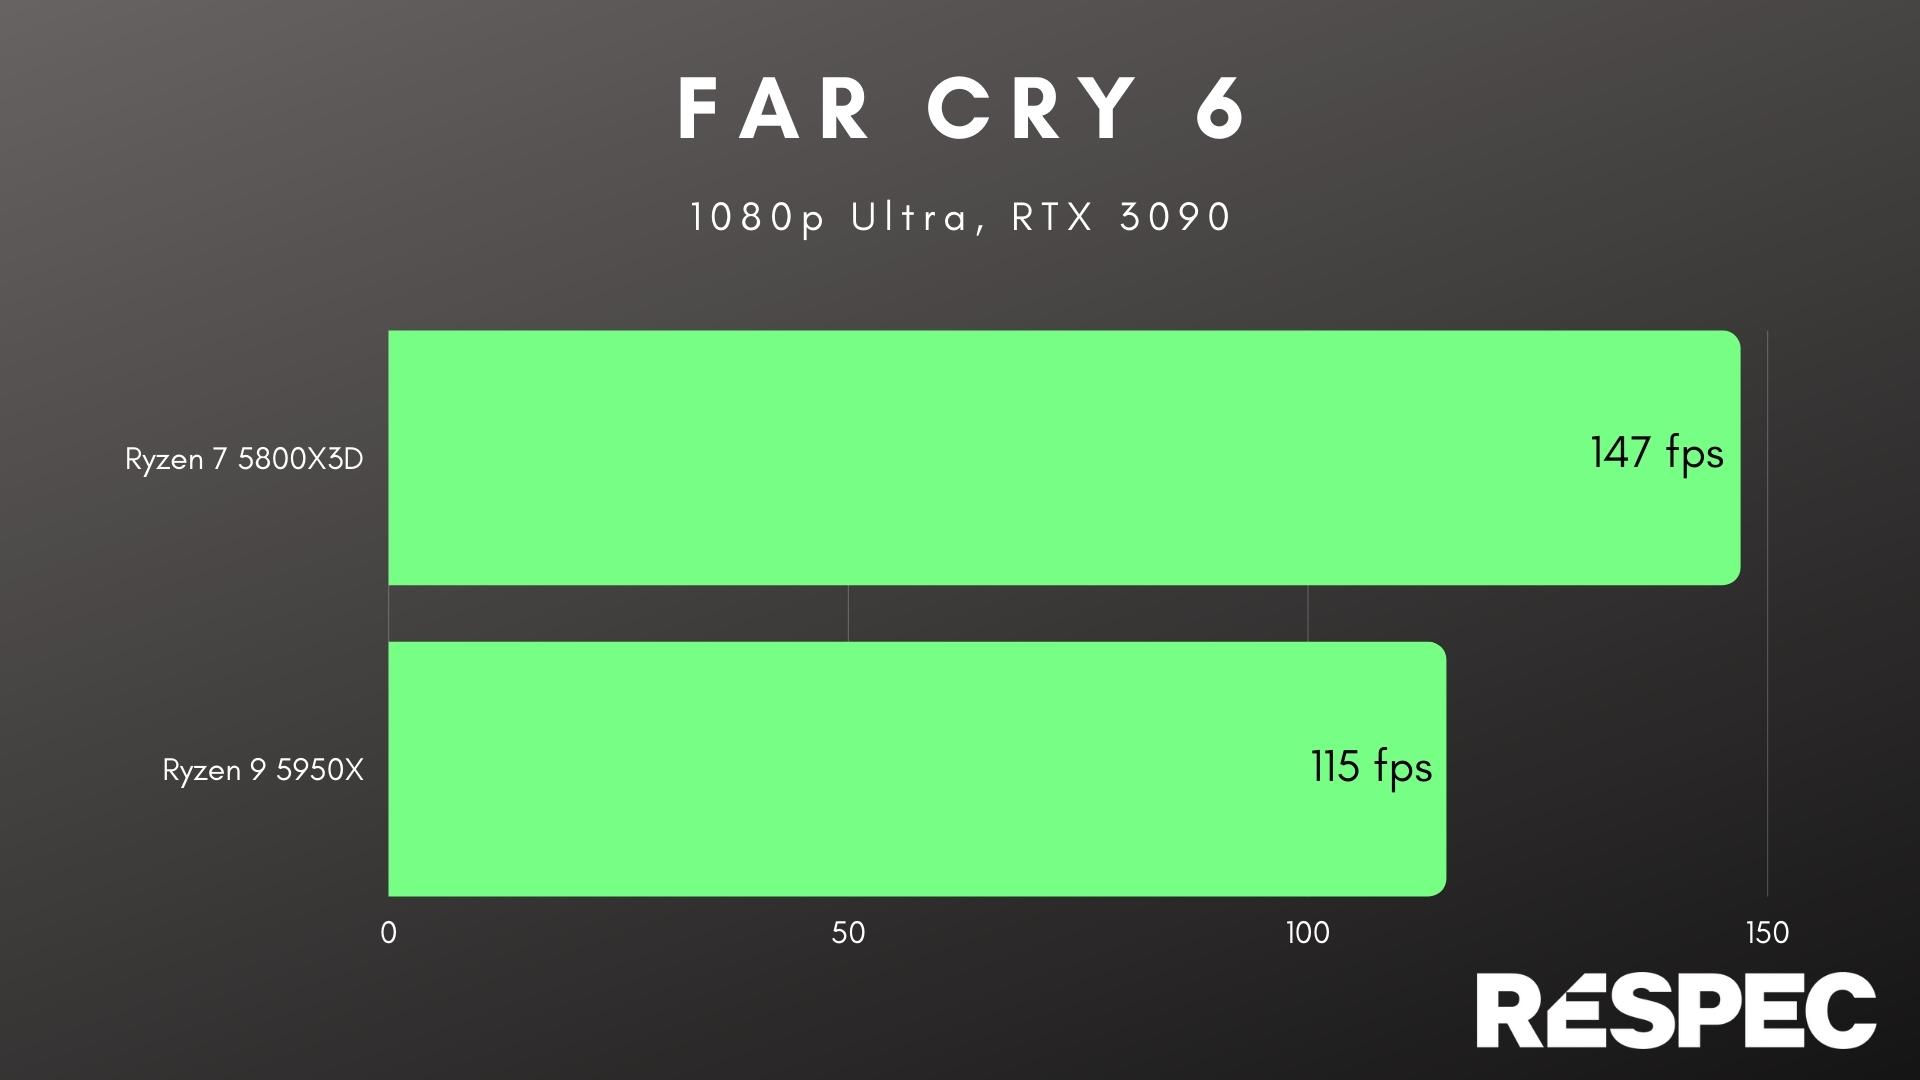 Desempenho do Ryzen 7 5800X3D em Far Cry 6.